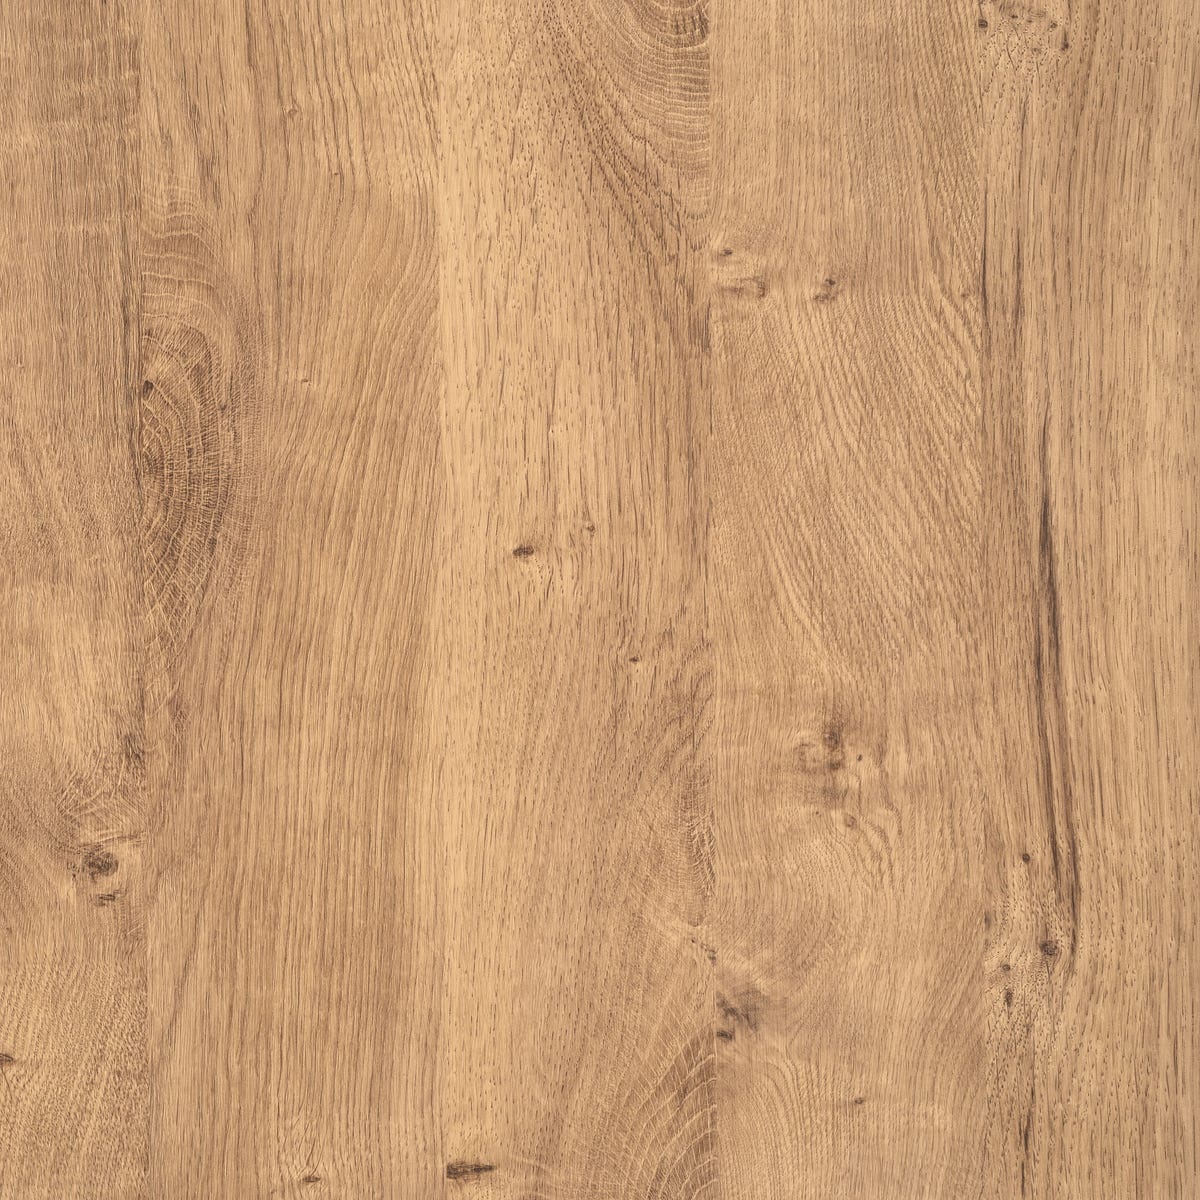 Zdjęcia - Pozostałe meble D-C-FIX Okleina Ribbeck Oak brązowa 45 x 200 cm imitująca drewno 